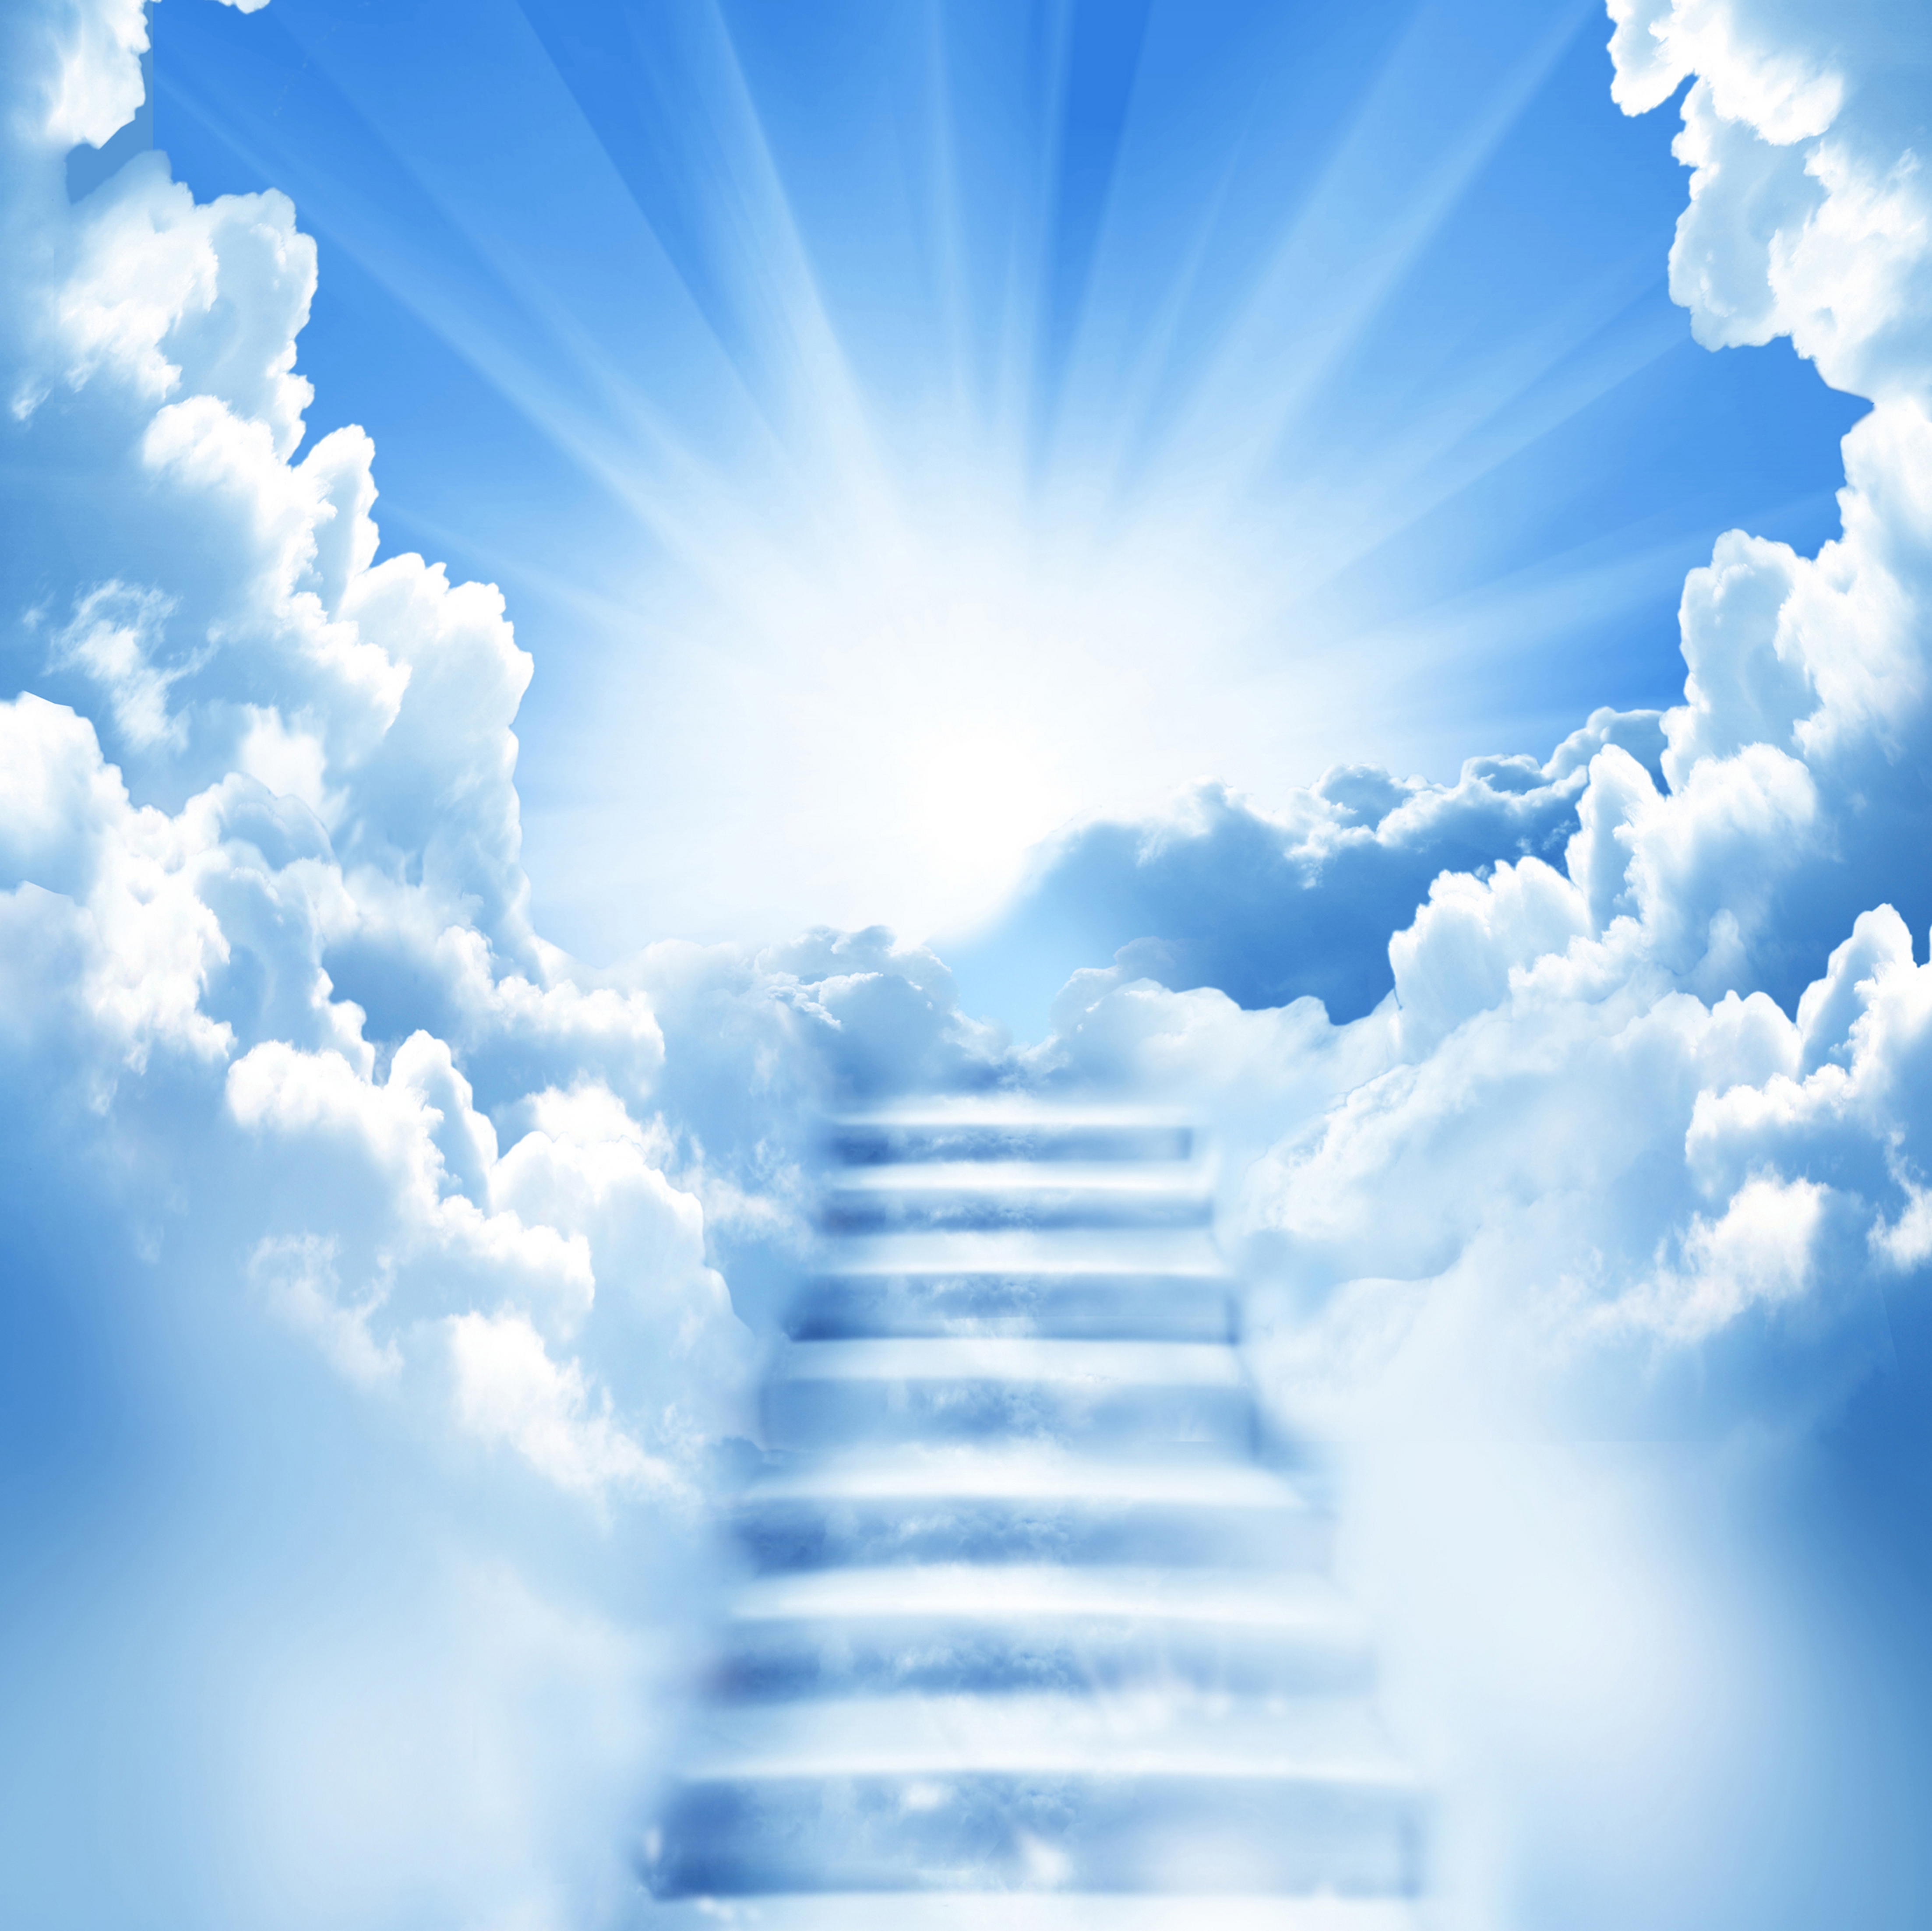 Stairway To Nectar Heaven Desktop Wallpaper